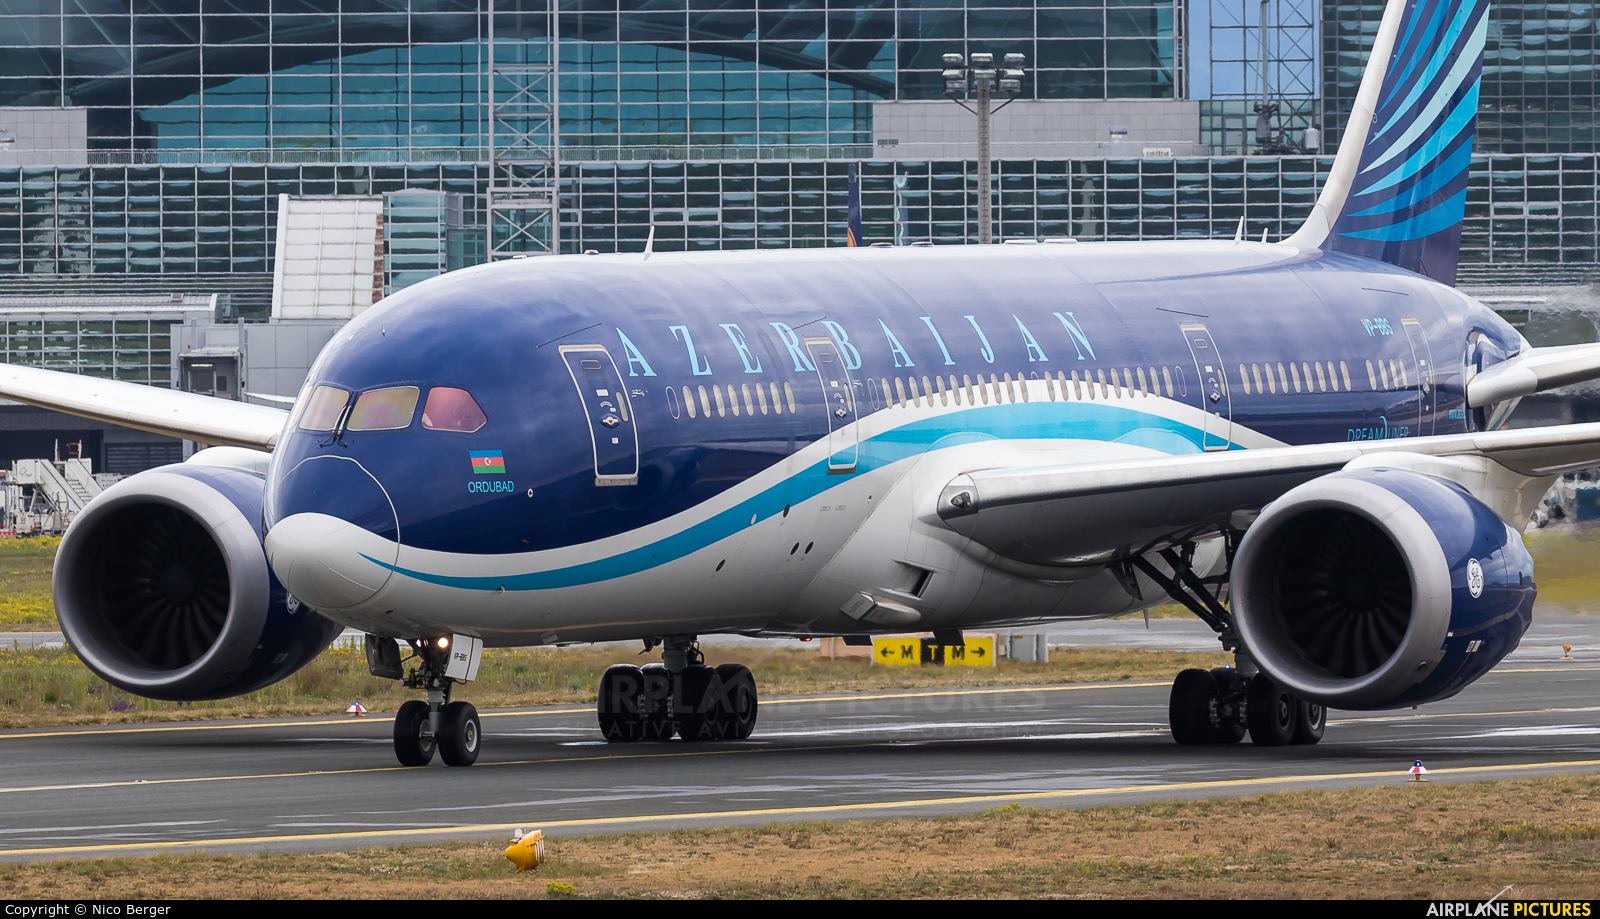 Azerbaijan Airlines VP-BBS aircraft at Frankfurt